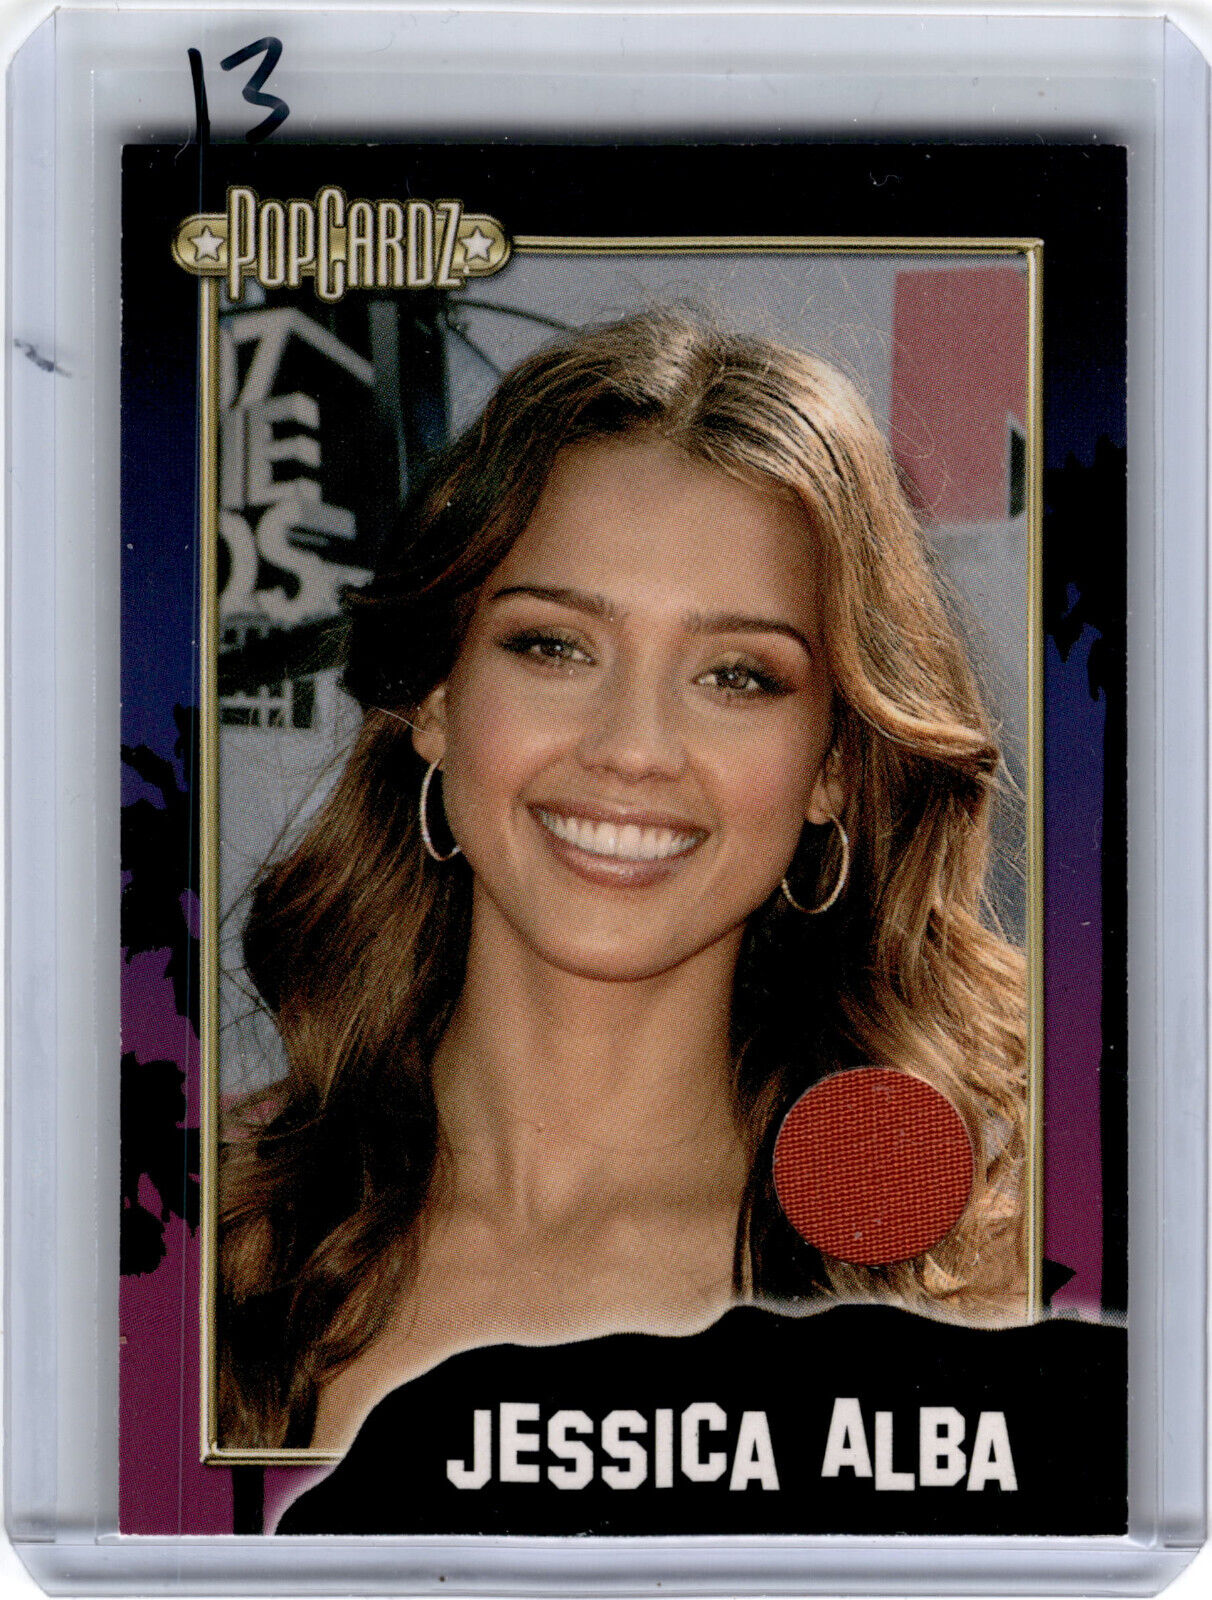 2008 Popcardz Relic Card Jessica Alba